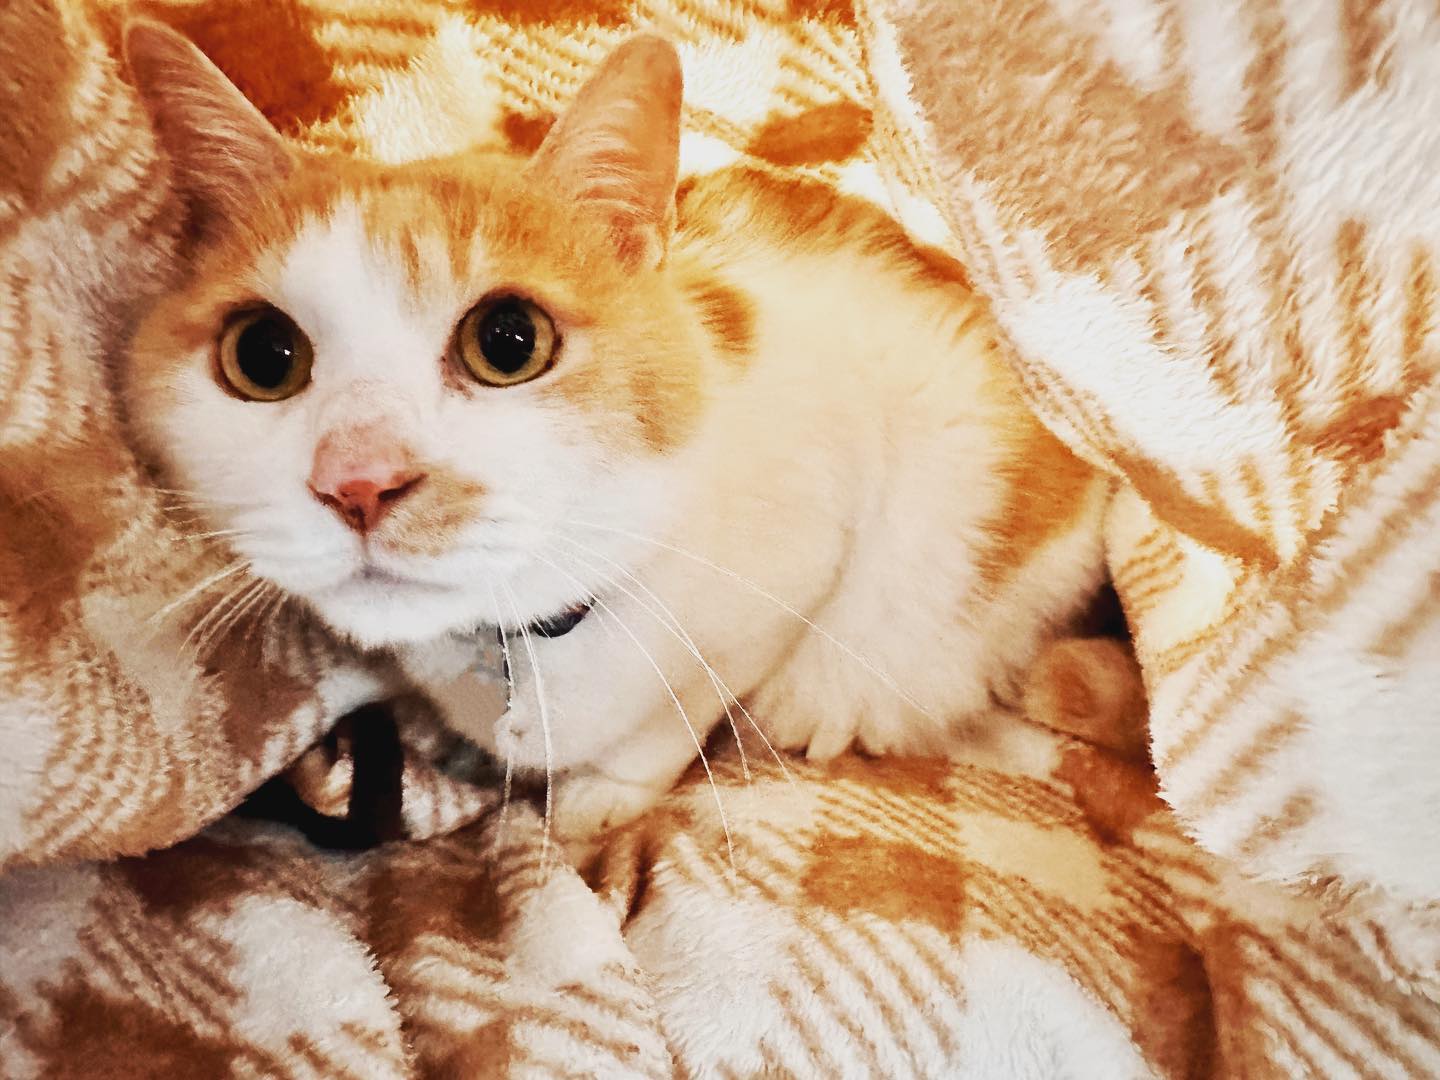 毛布に同化して隠れていた猫さん。寒いよね